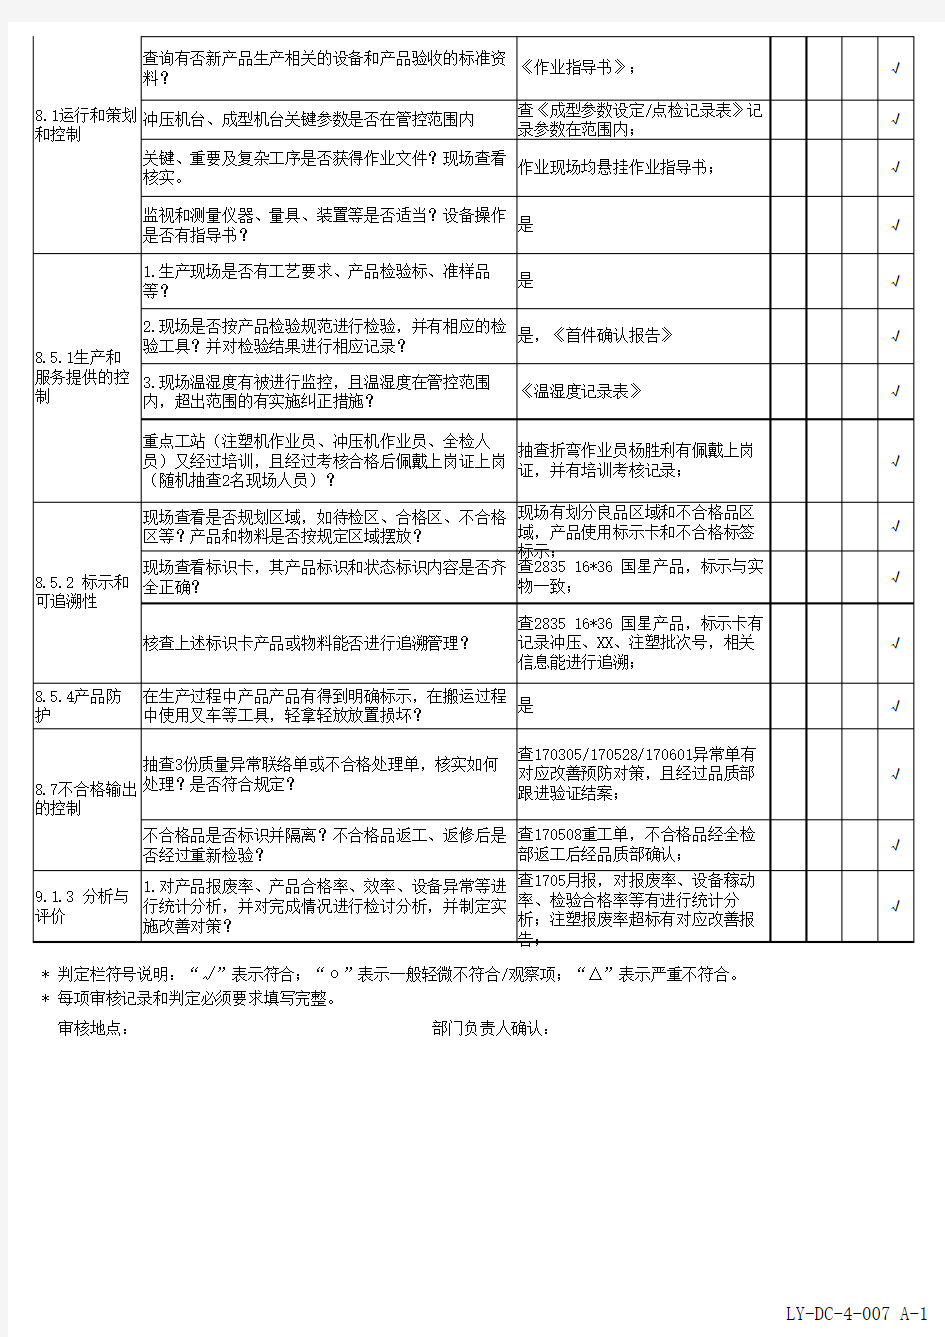 iso9001-2015生产部内审检查表范例